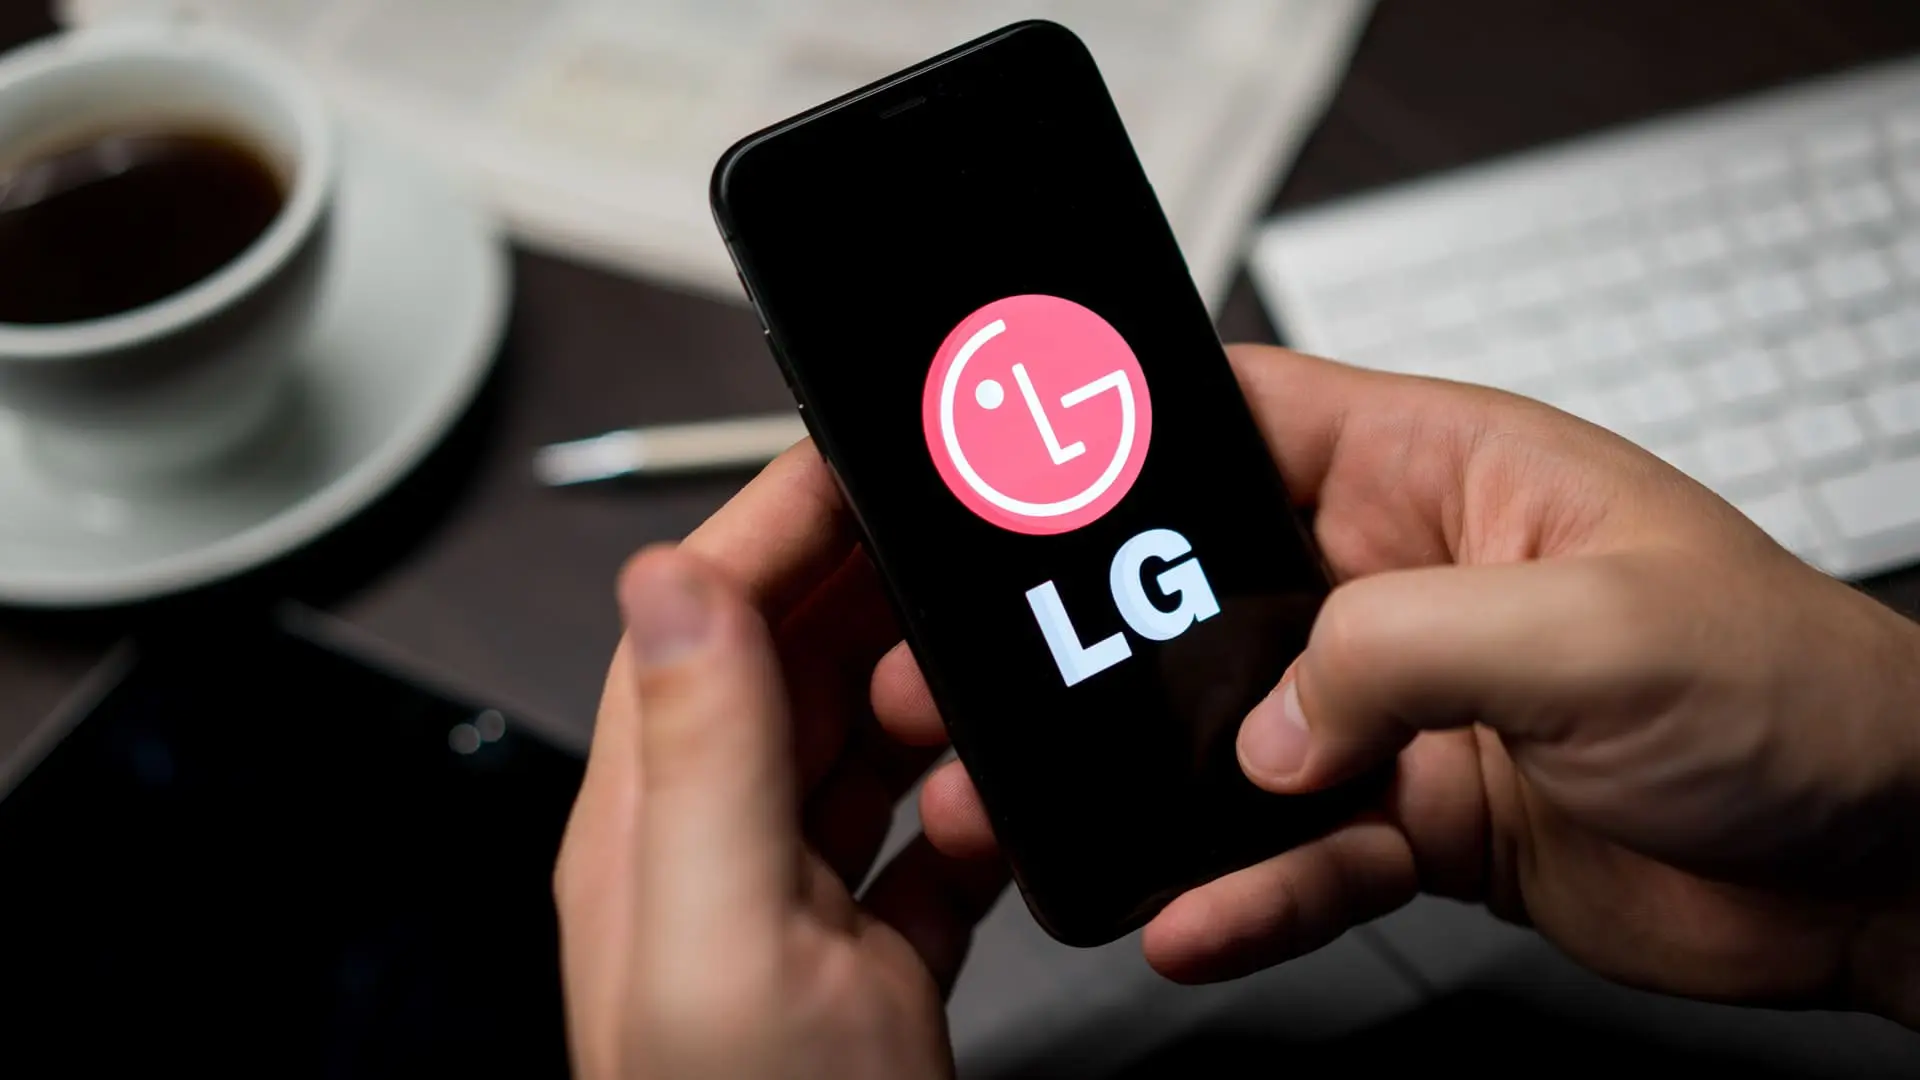 Mãos mexendo em um celular LG com a logo na tela